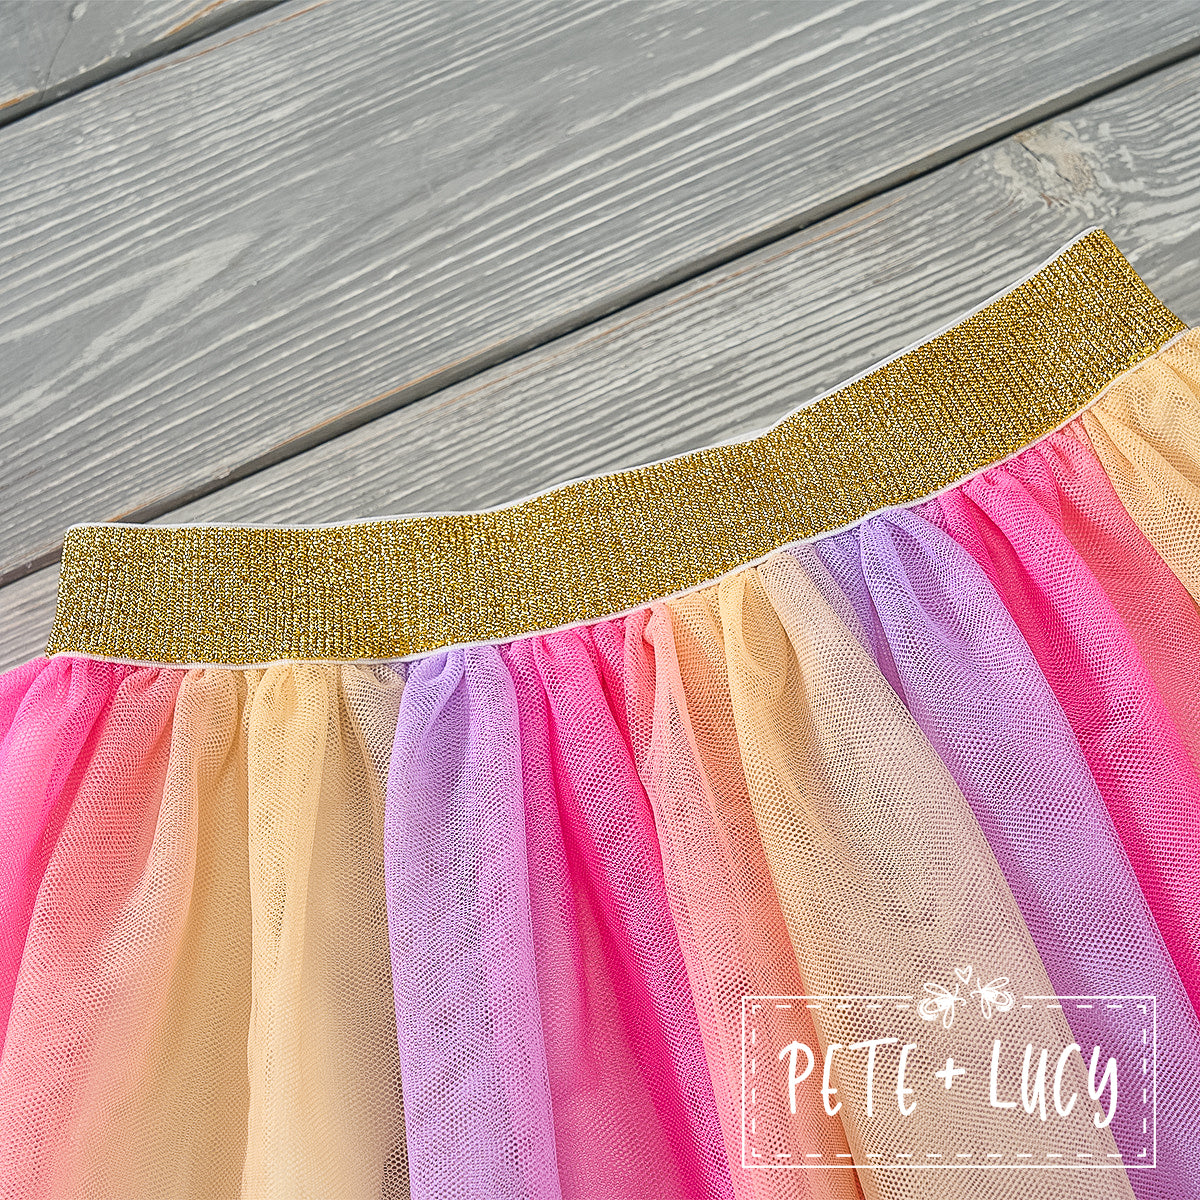 Tu tu Good: Multicolored Tulle Skirt